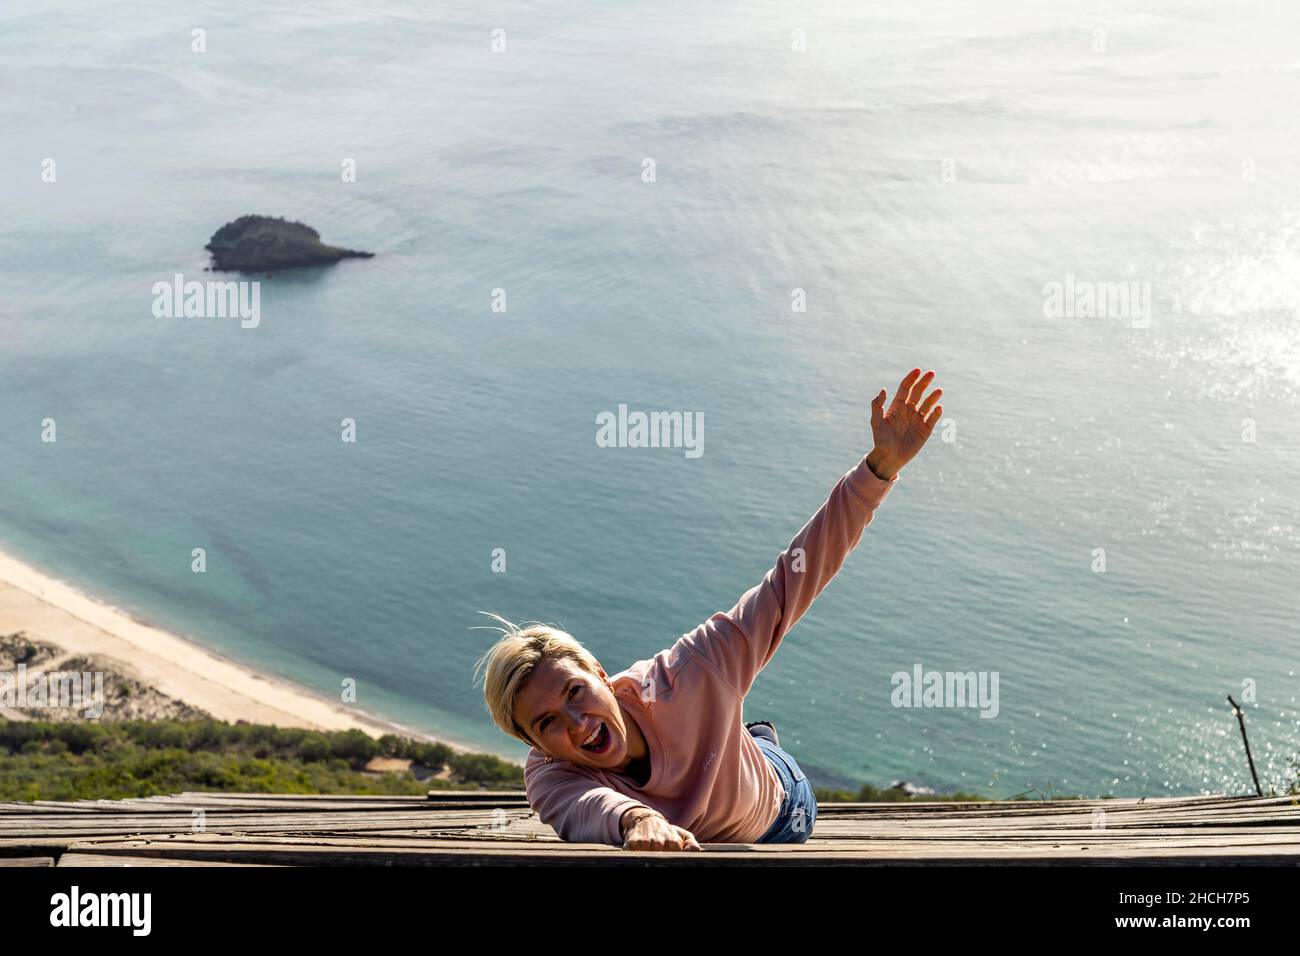 Woman falling from the high into the ocean, Miradouro do Portinho da Arrabida, Portugal Stock Photo